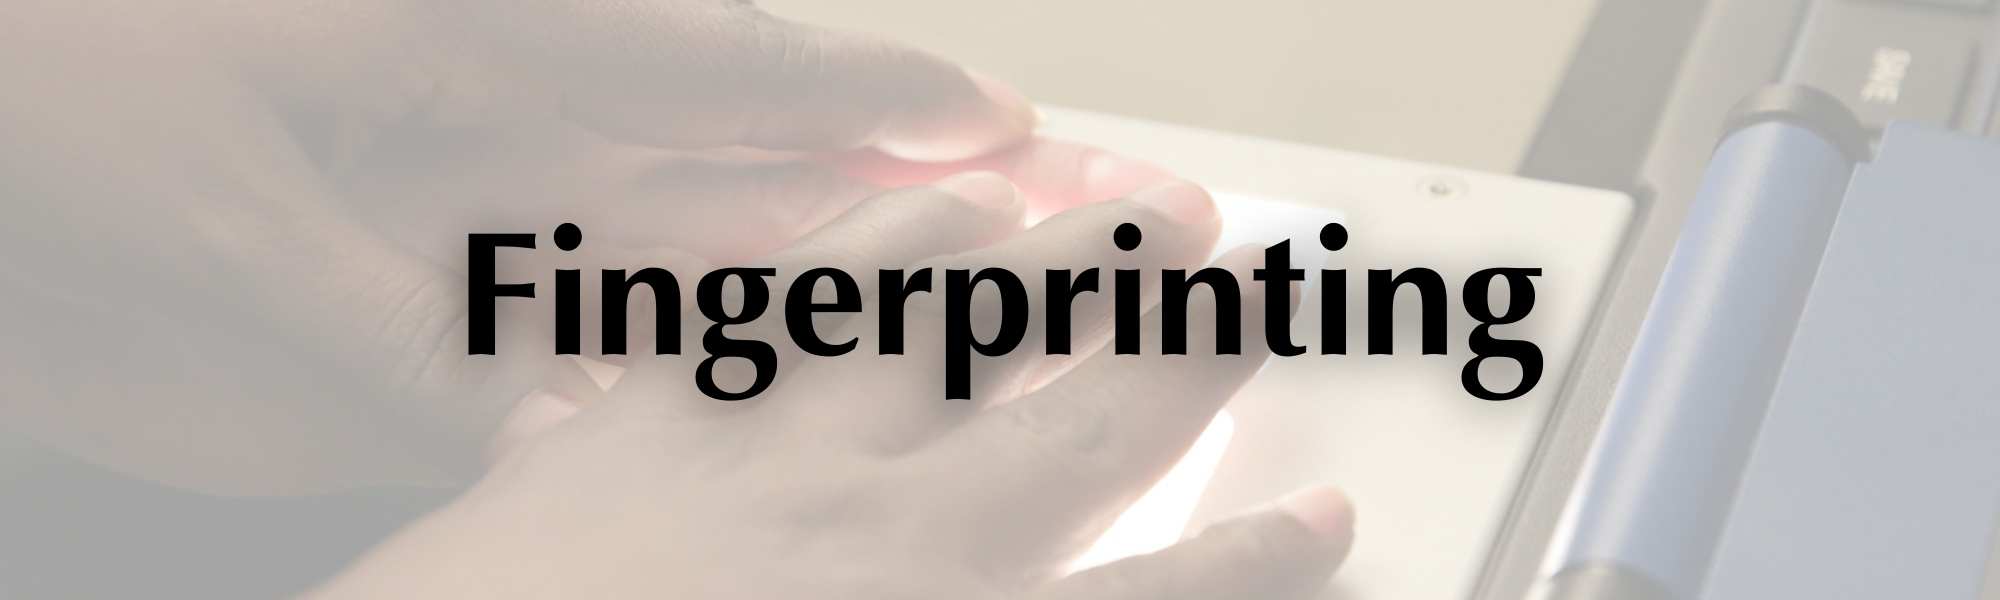 Fingerprinting Header